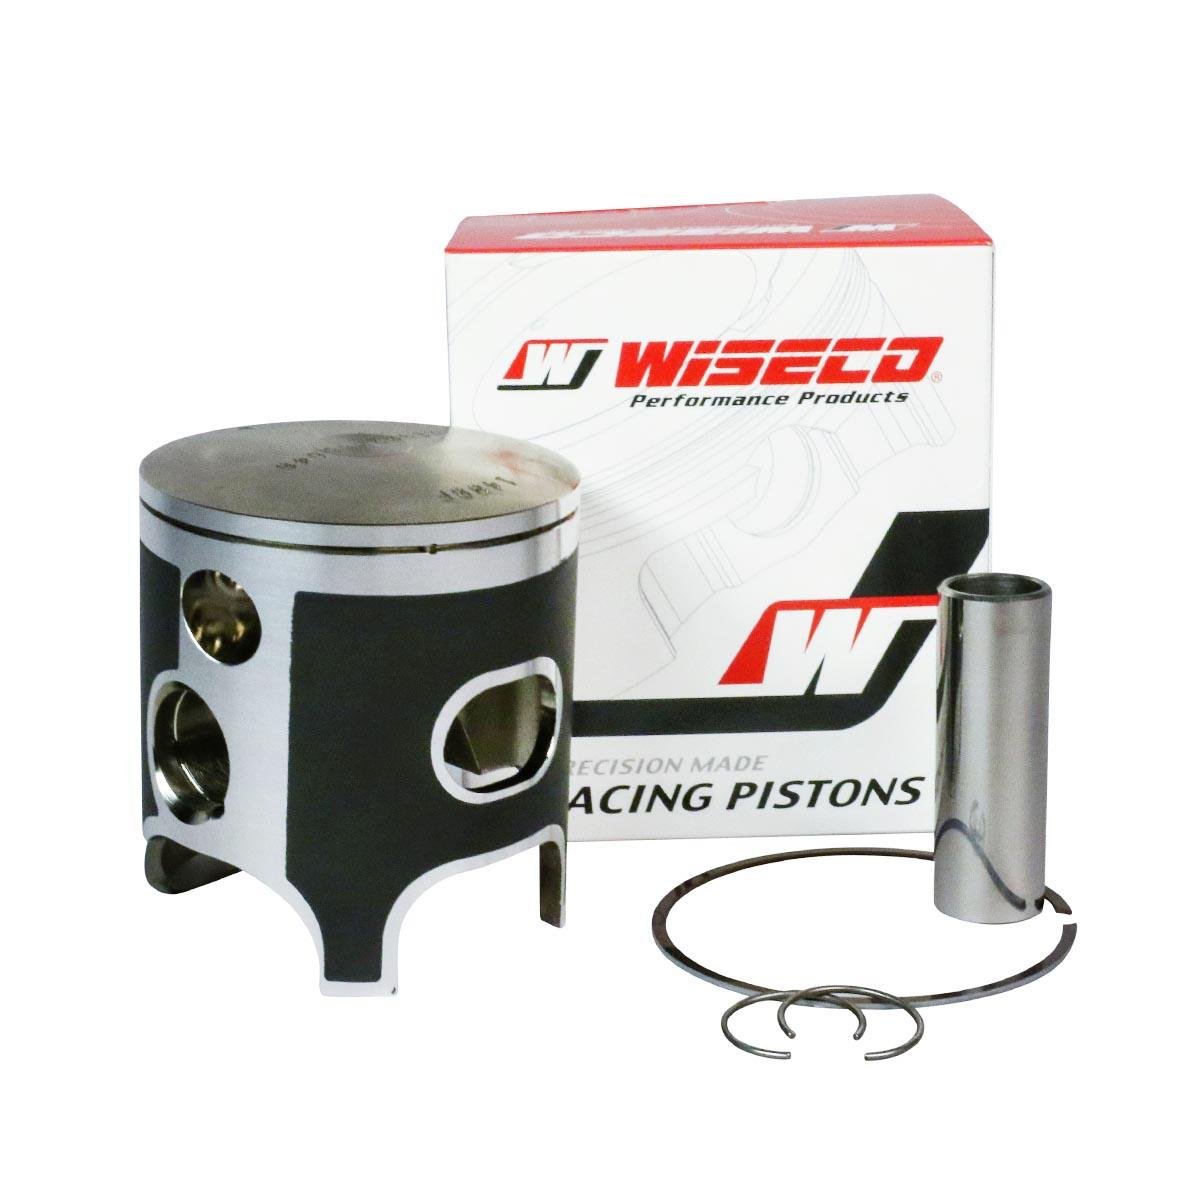 Wiseco Piston Ring 54 Standard Bore for Suzuki RM125  2000-2003